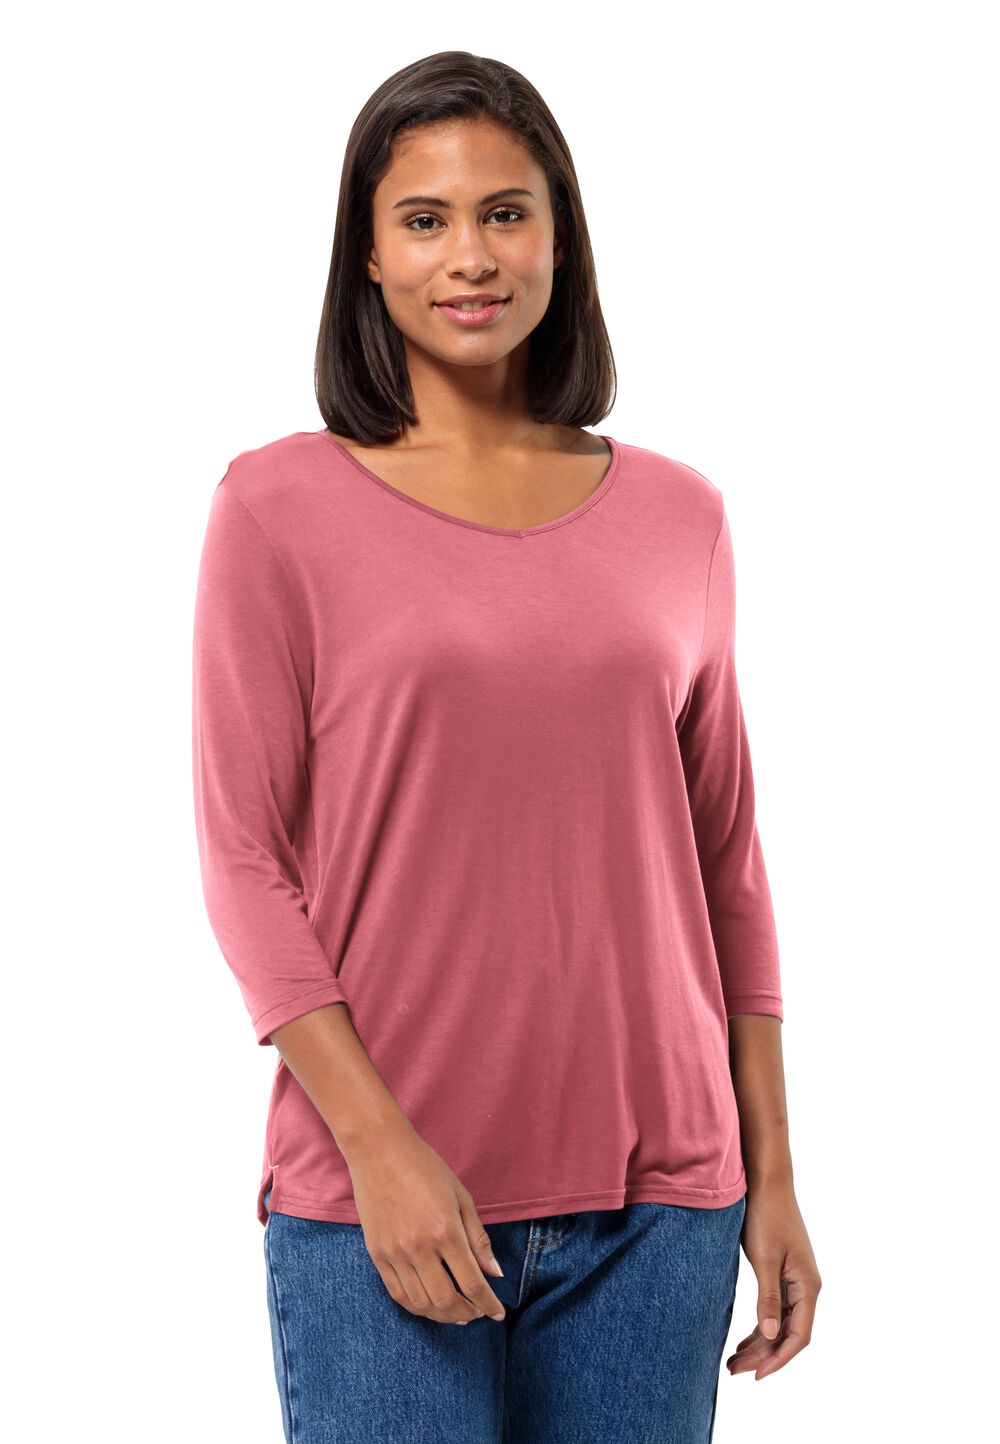 Jack Wolfskin Halbarm Shirt Damen Mola 3/4 T-Shirt Women XL soft pink soft pink von Jack Wolfskin